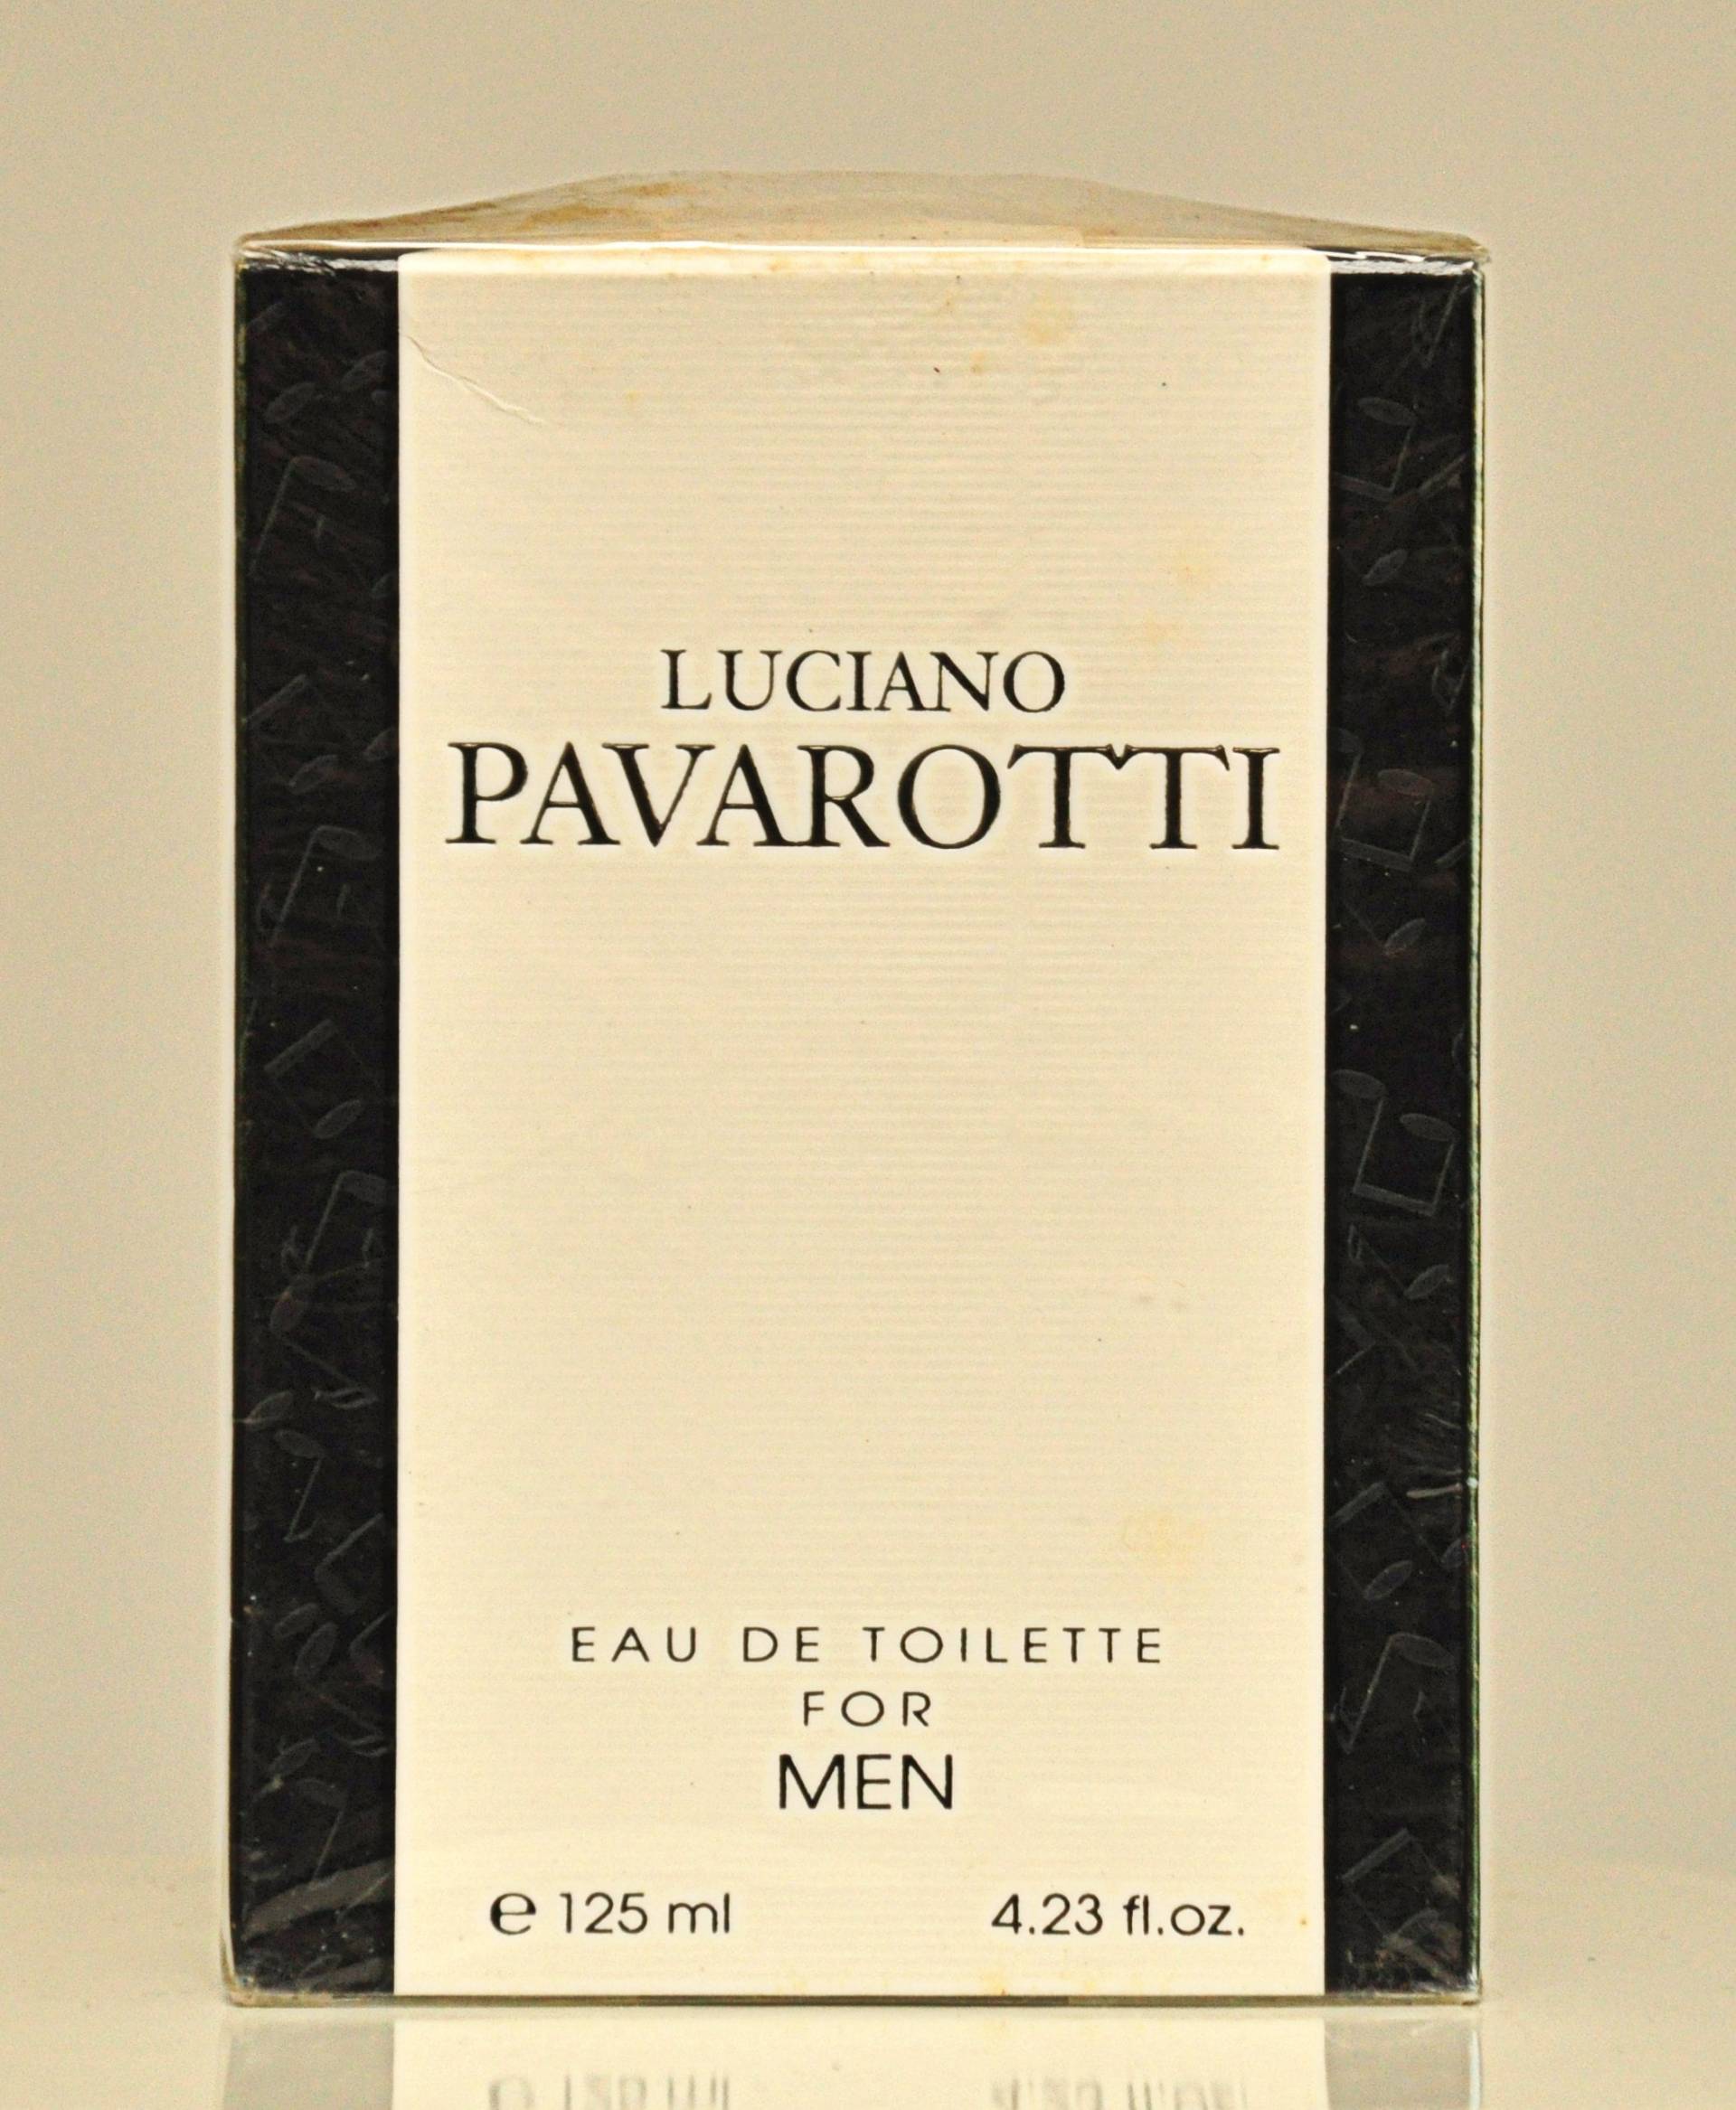 Luciano Pavarotti Von Eau De Toilette Für Männer Edt 125Ml Splash Non Spray Parfüm Mann Rare Vintage 1994 von Etsy - YourVintagePerfume